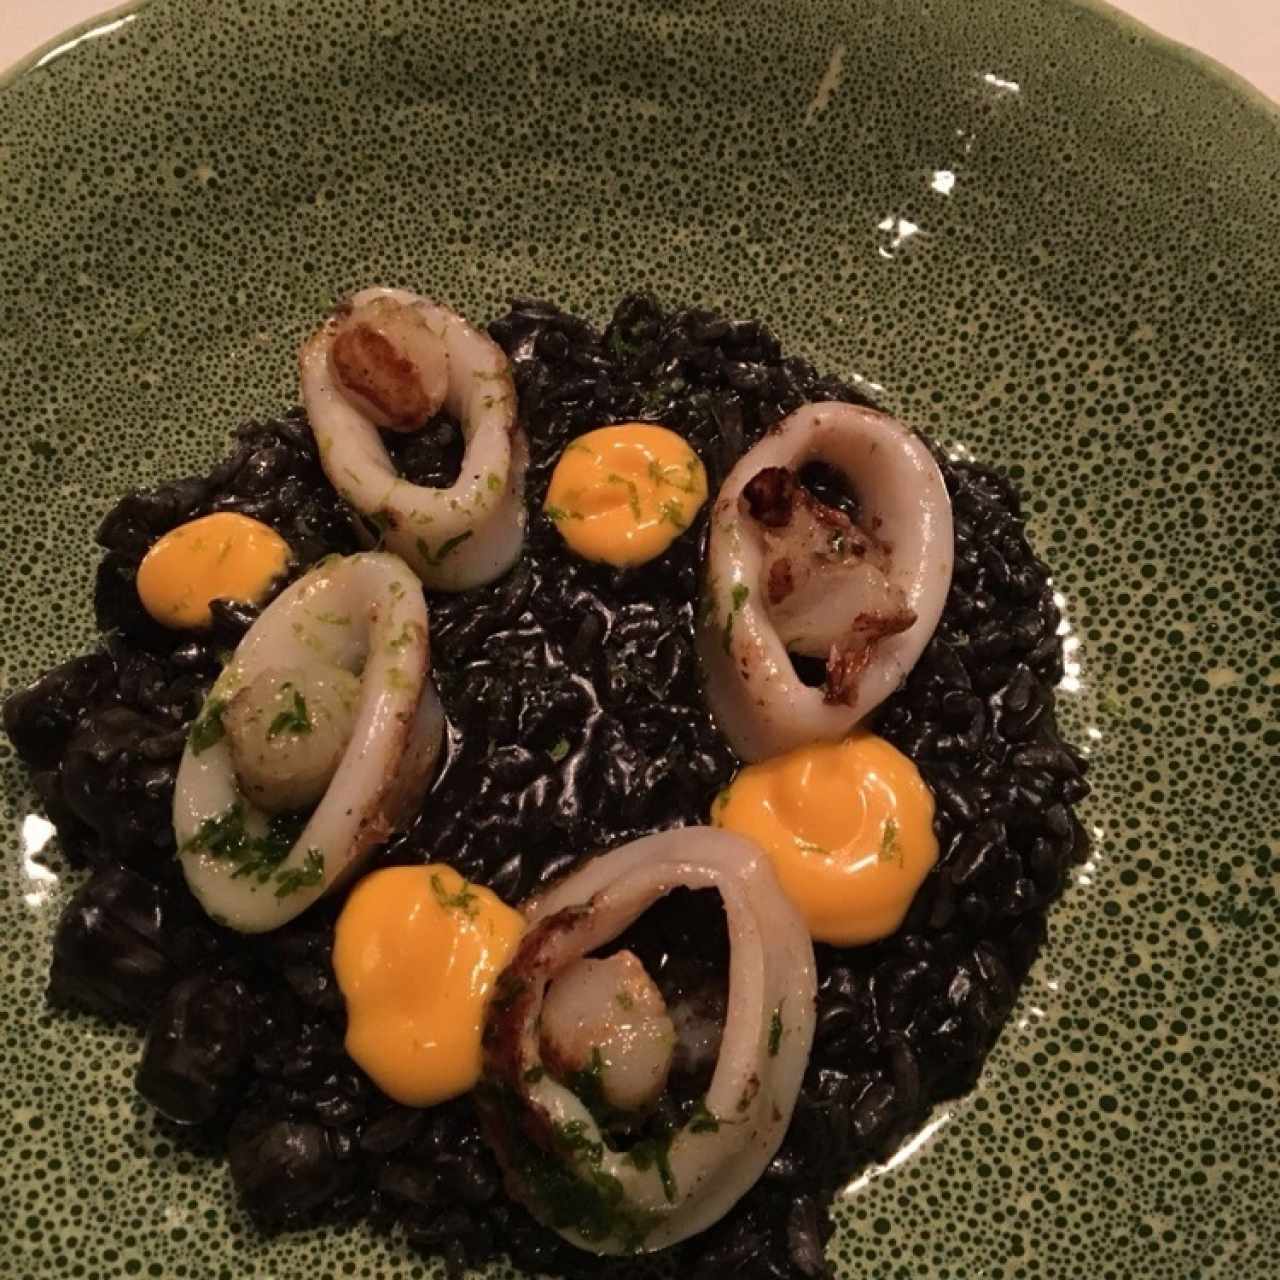 calamares rellenos (2010) arroz negro con conchuelas y salsa de ajo